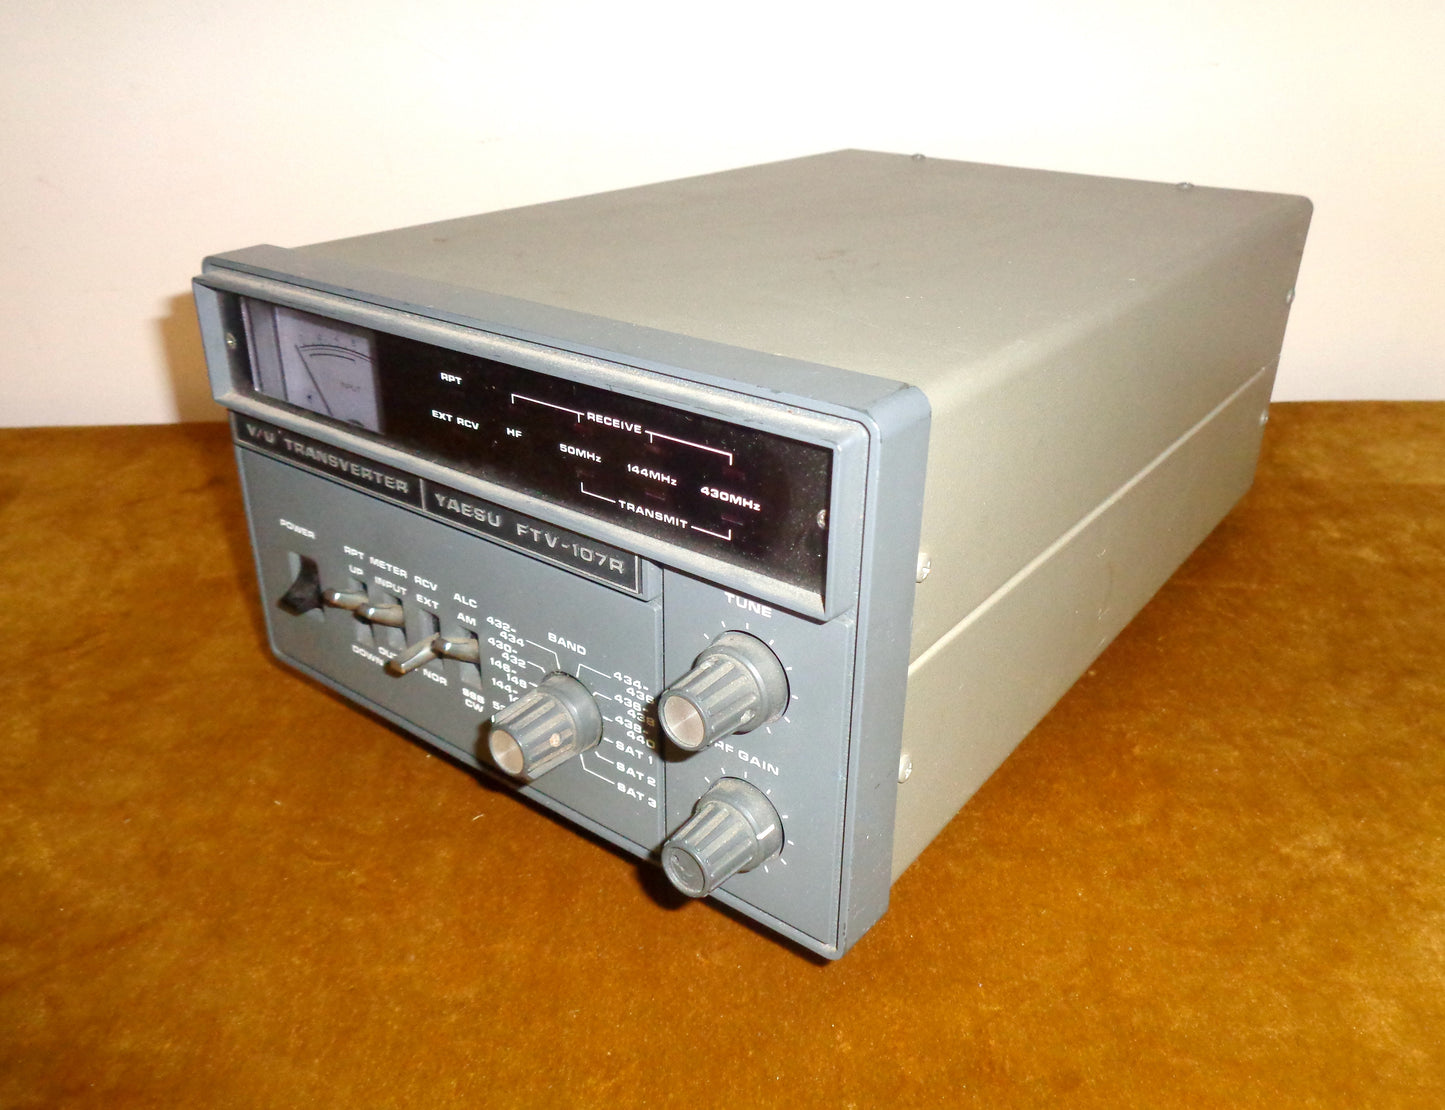 1980s Yaesu FTV-107R VHF/UHF Transverter